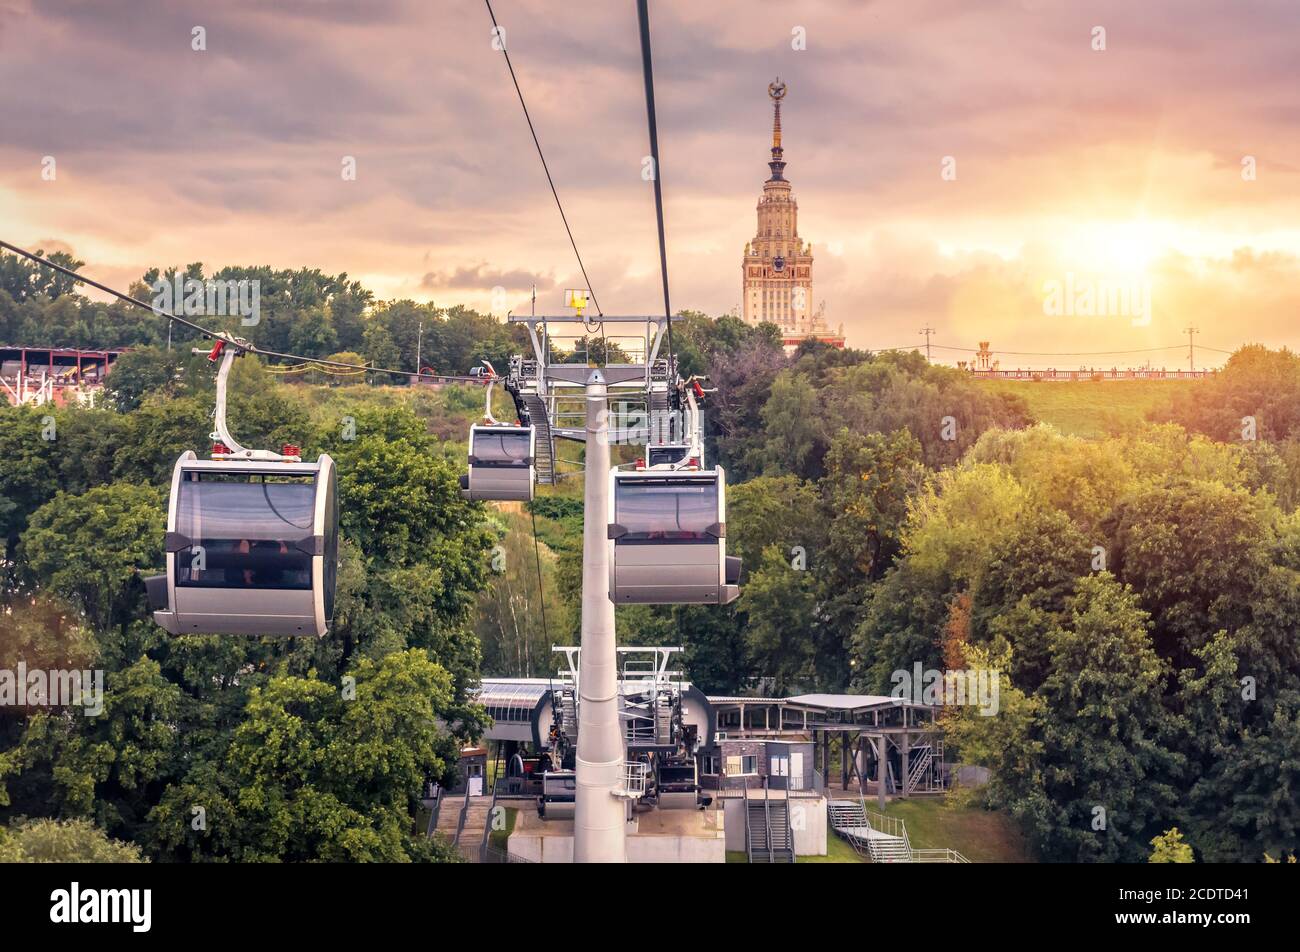 Seilbahn auf Sparrow Hills bei Sonnenuntergang, Moskau, Russland. Die Kabinen der Seilbahn bewegen sich über den Park, das Hauptgebäude der Moskauer Staatlichen Universität in der Ferne. Wunderschön Stockfoto